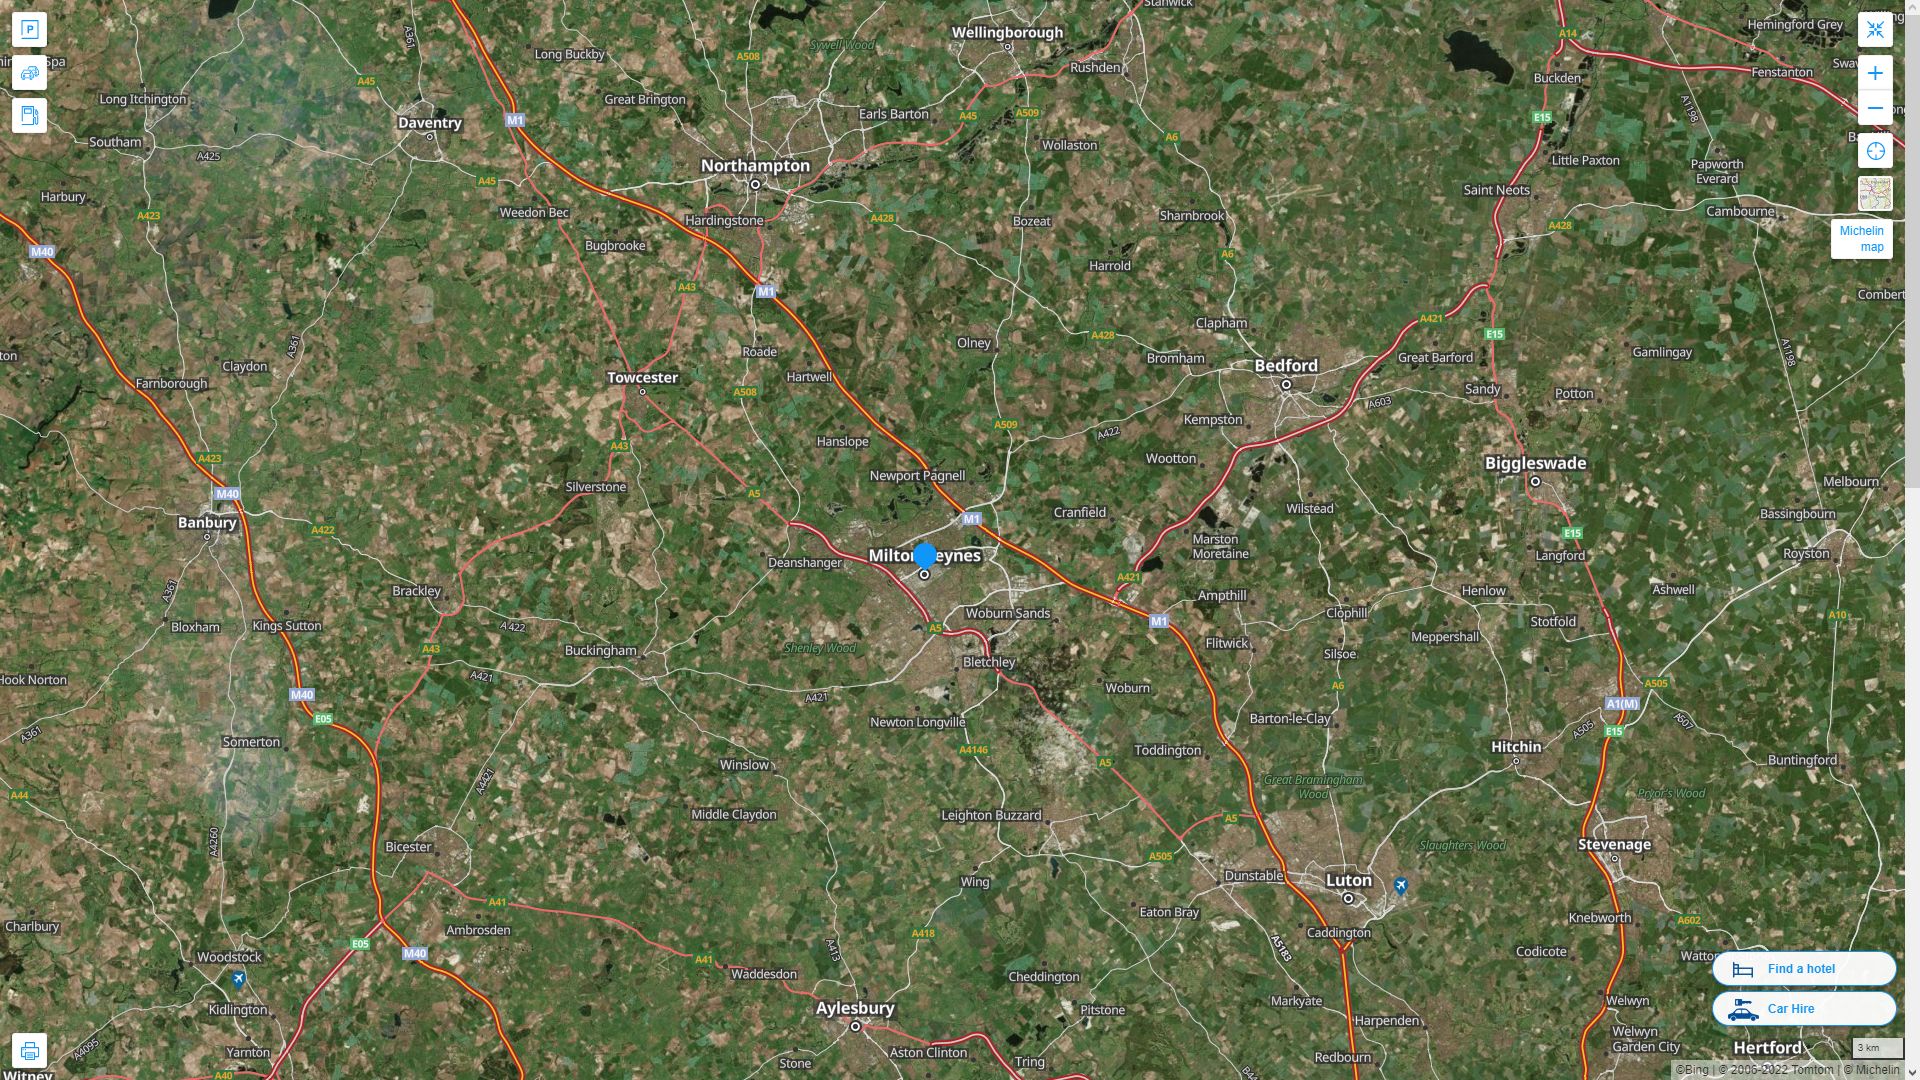 Milton Keynes Royaume Uni Autoroute et carte routiere avec vue satellite